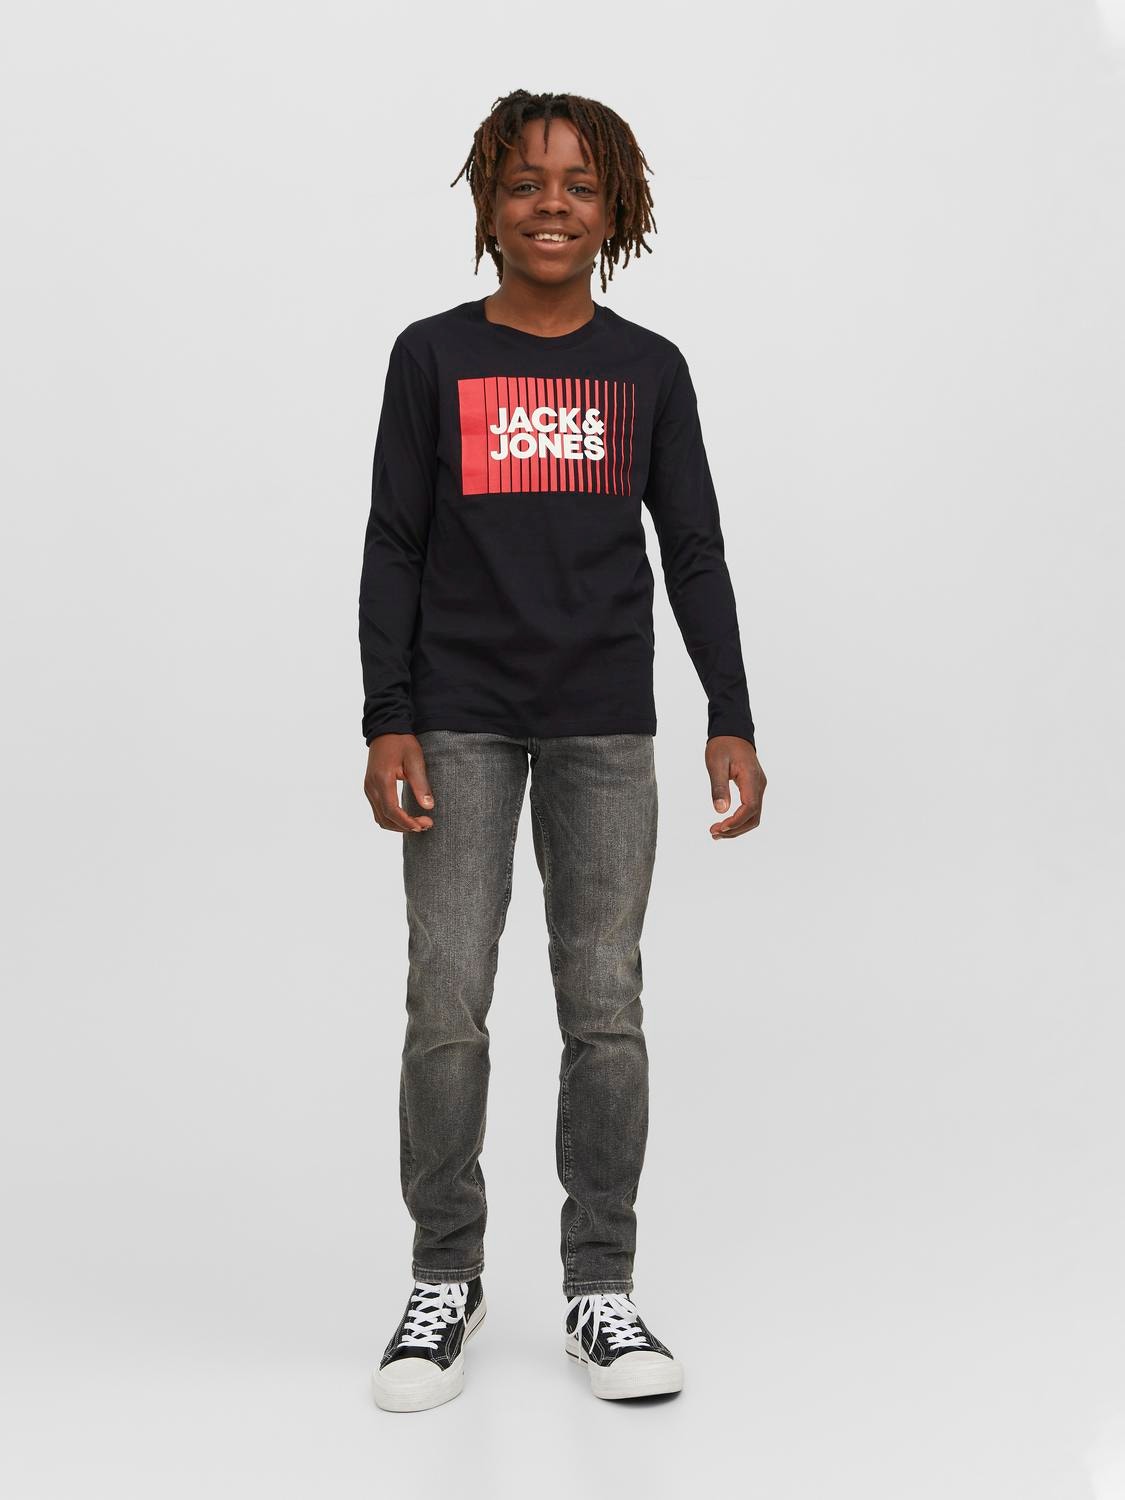 Jack & Jones T-shirt Logo Para meninos -Black - 12244209